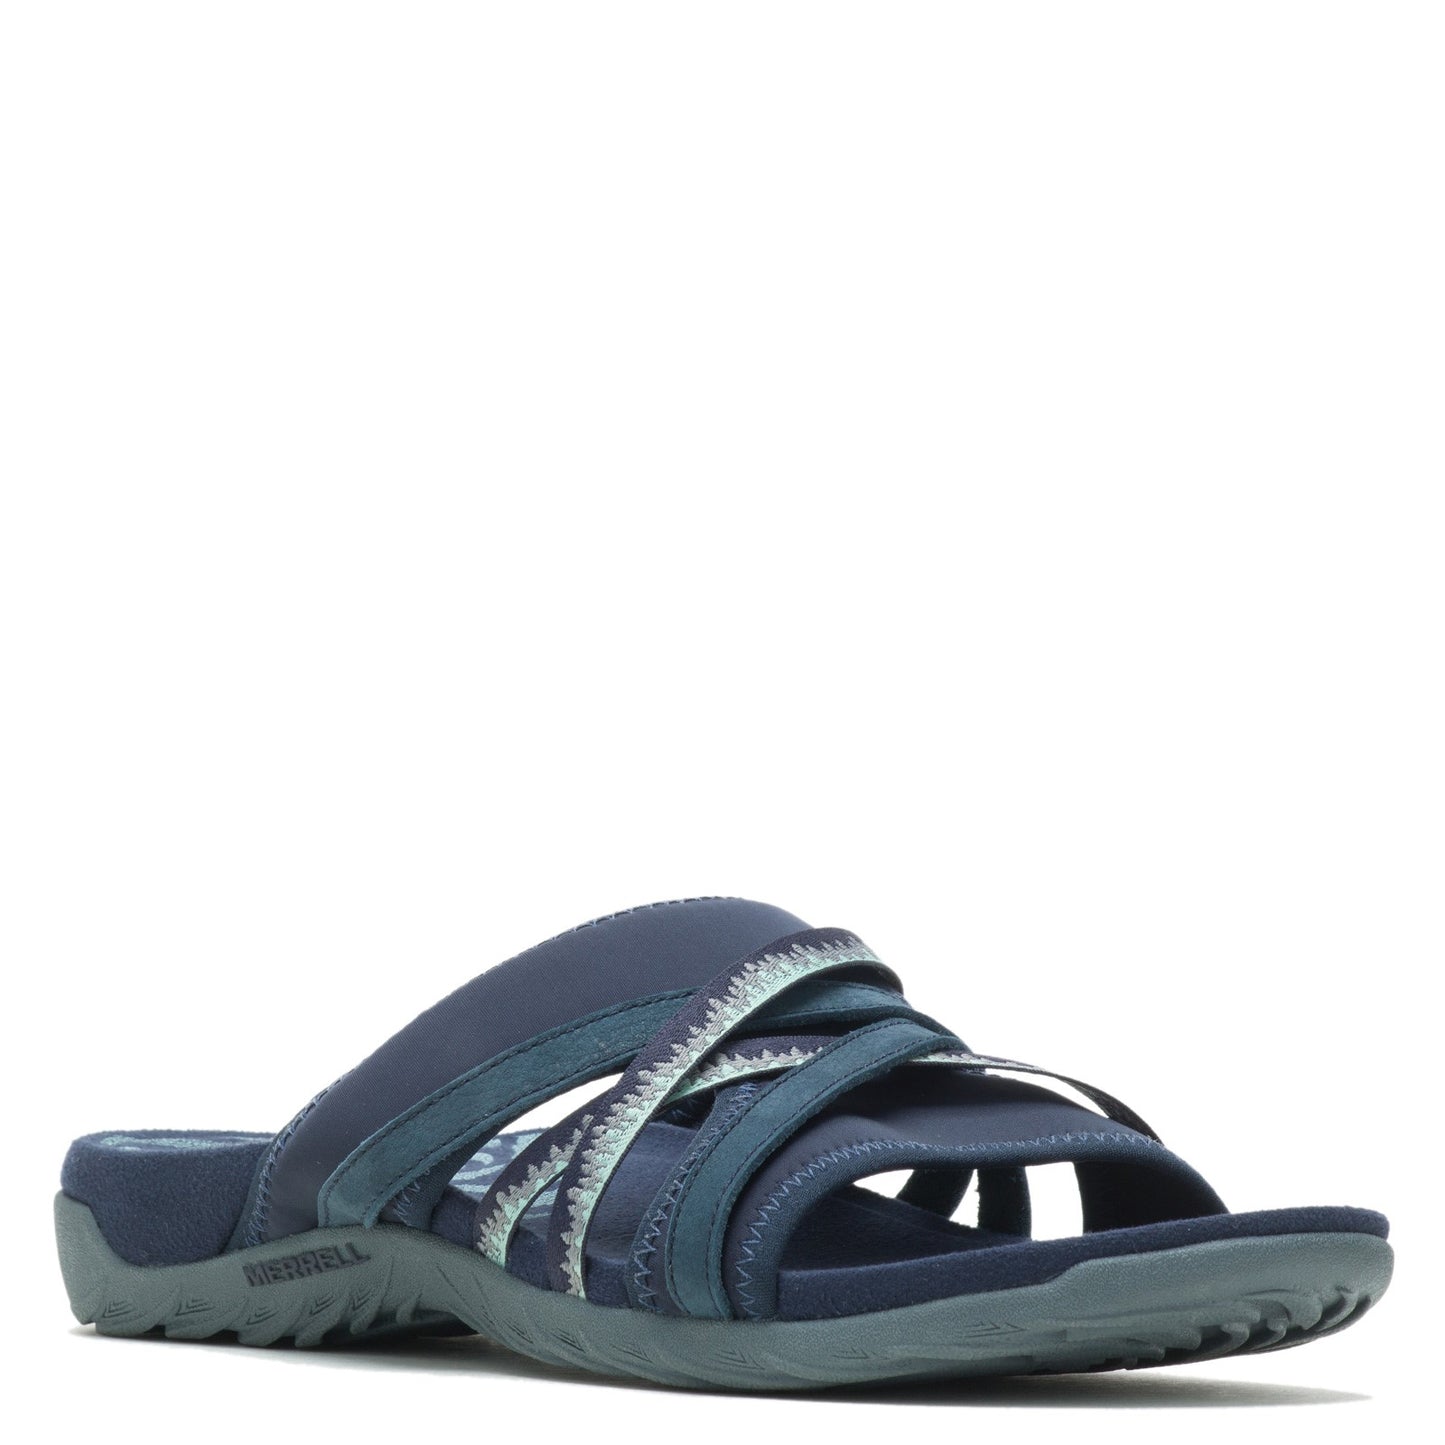 Peltz Shoes  Women's Merrell Terran Cush 3 Slide Sandal NAVY J002726